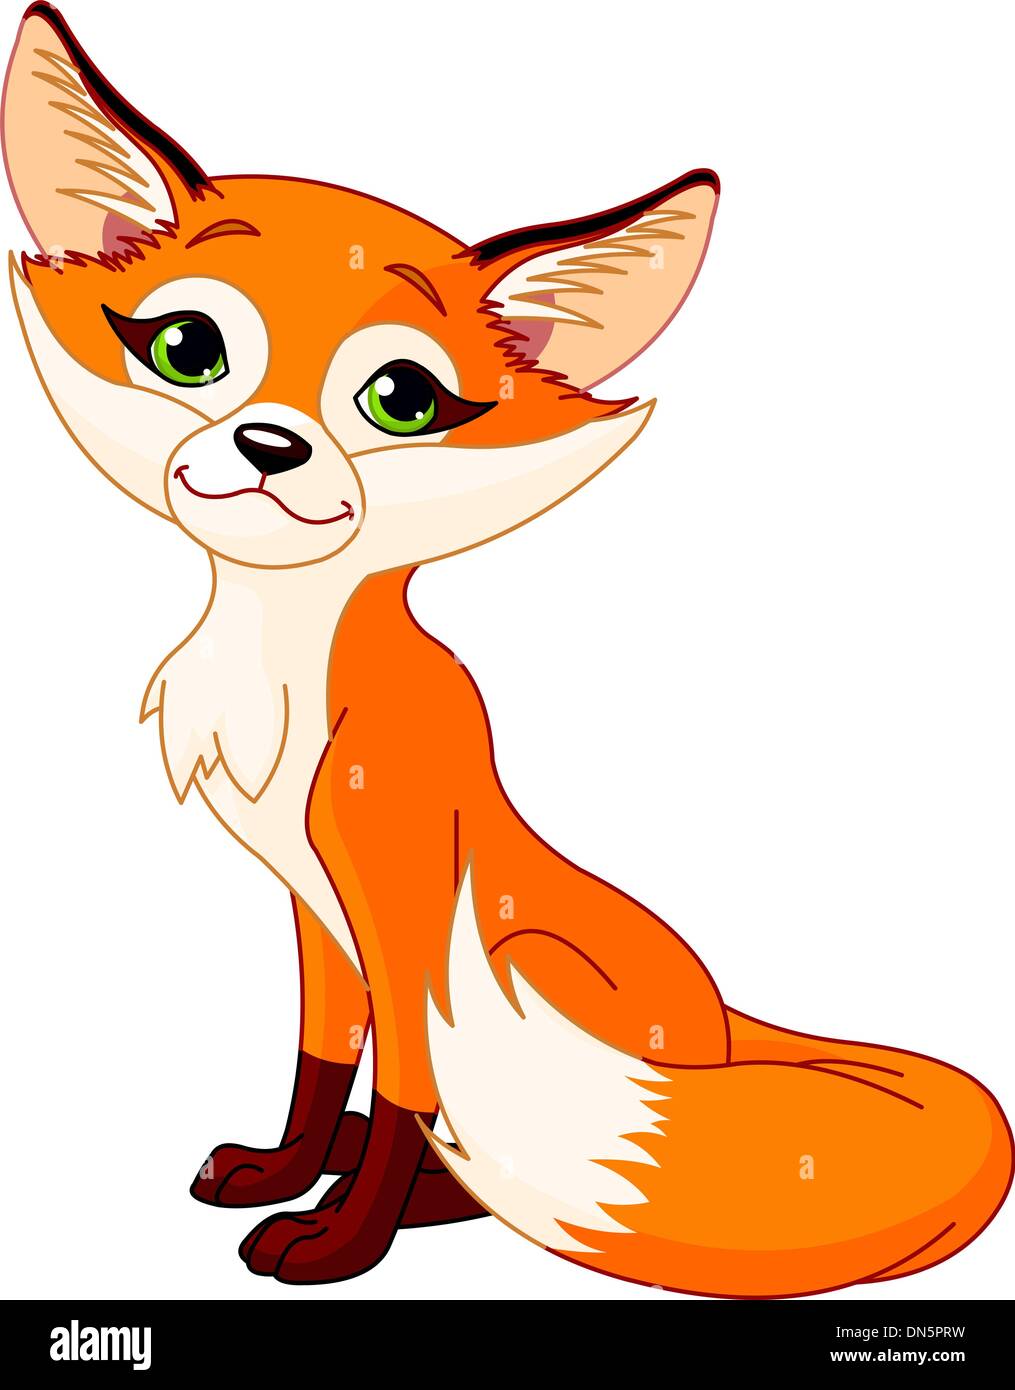 Cute cartoon fox Stock Vector